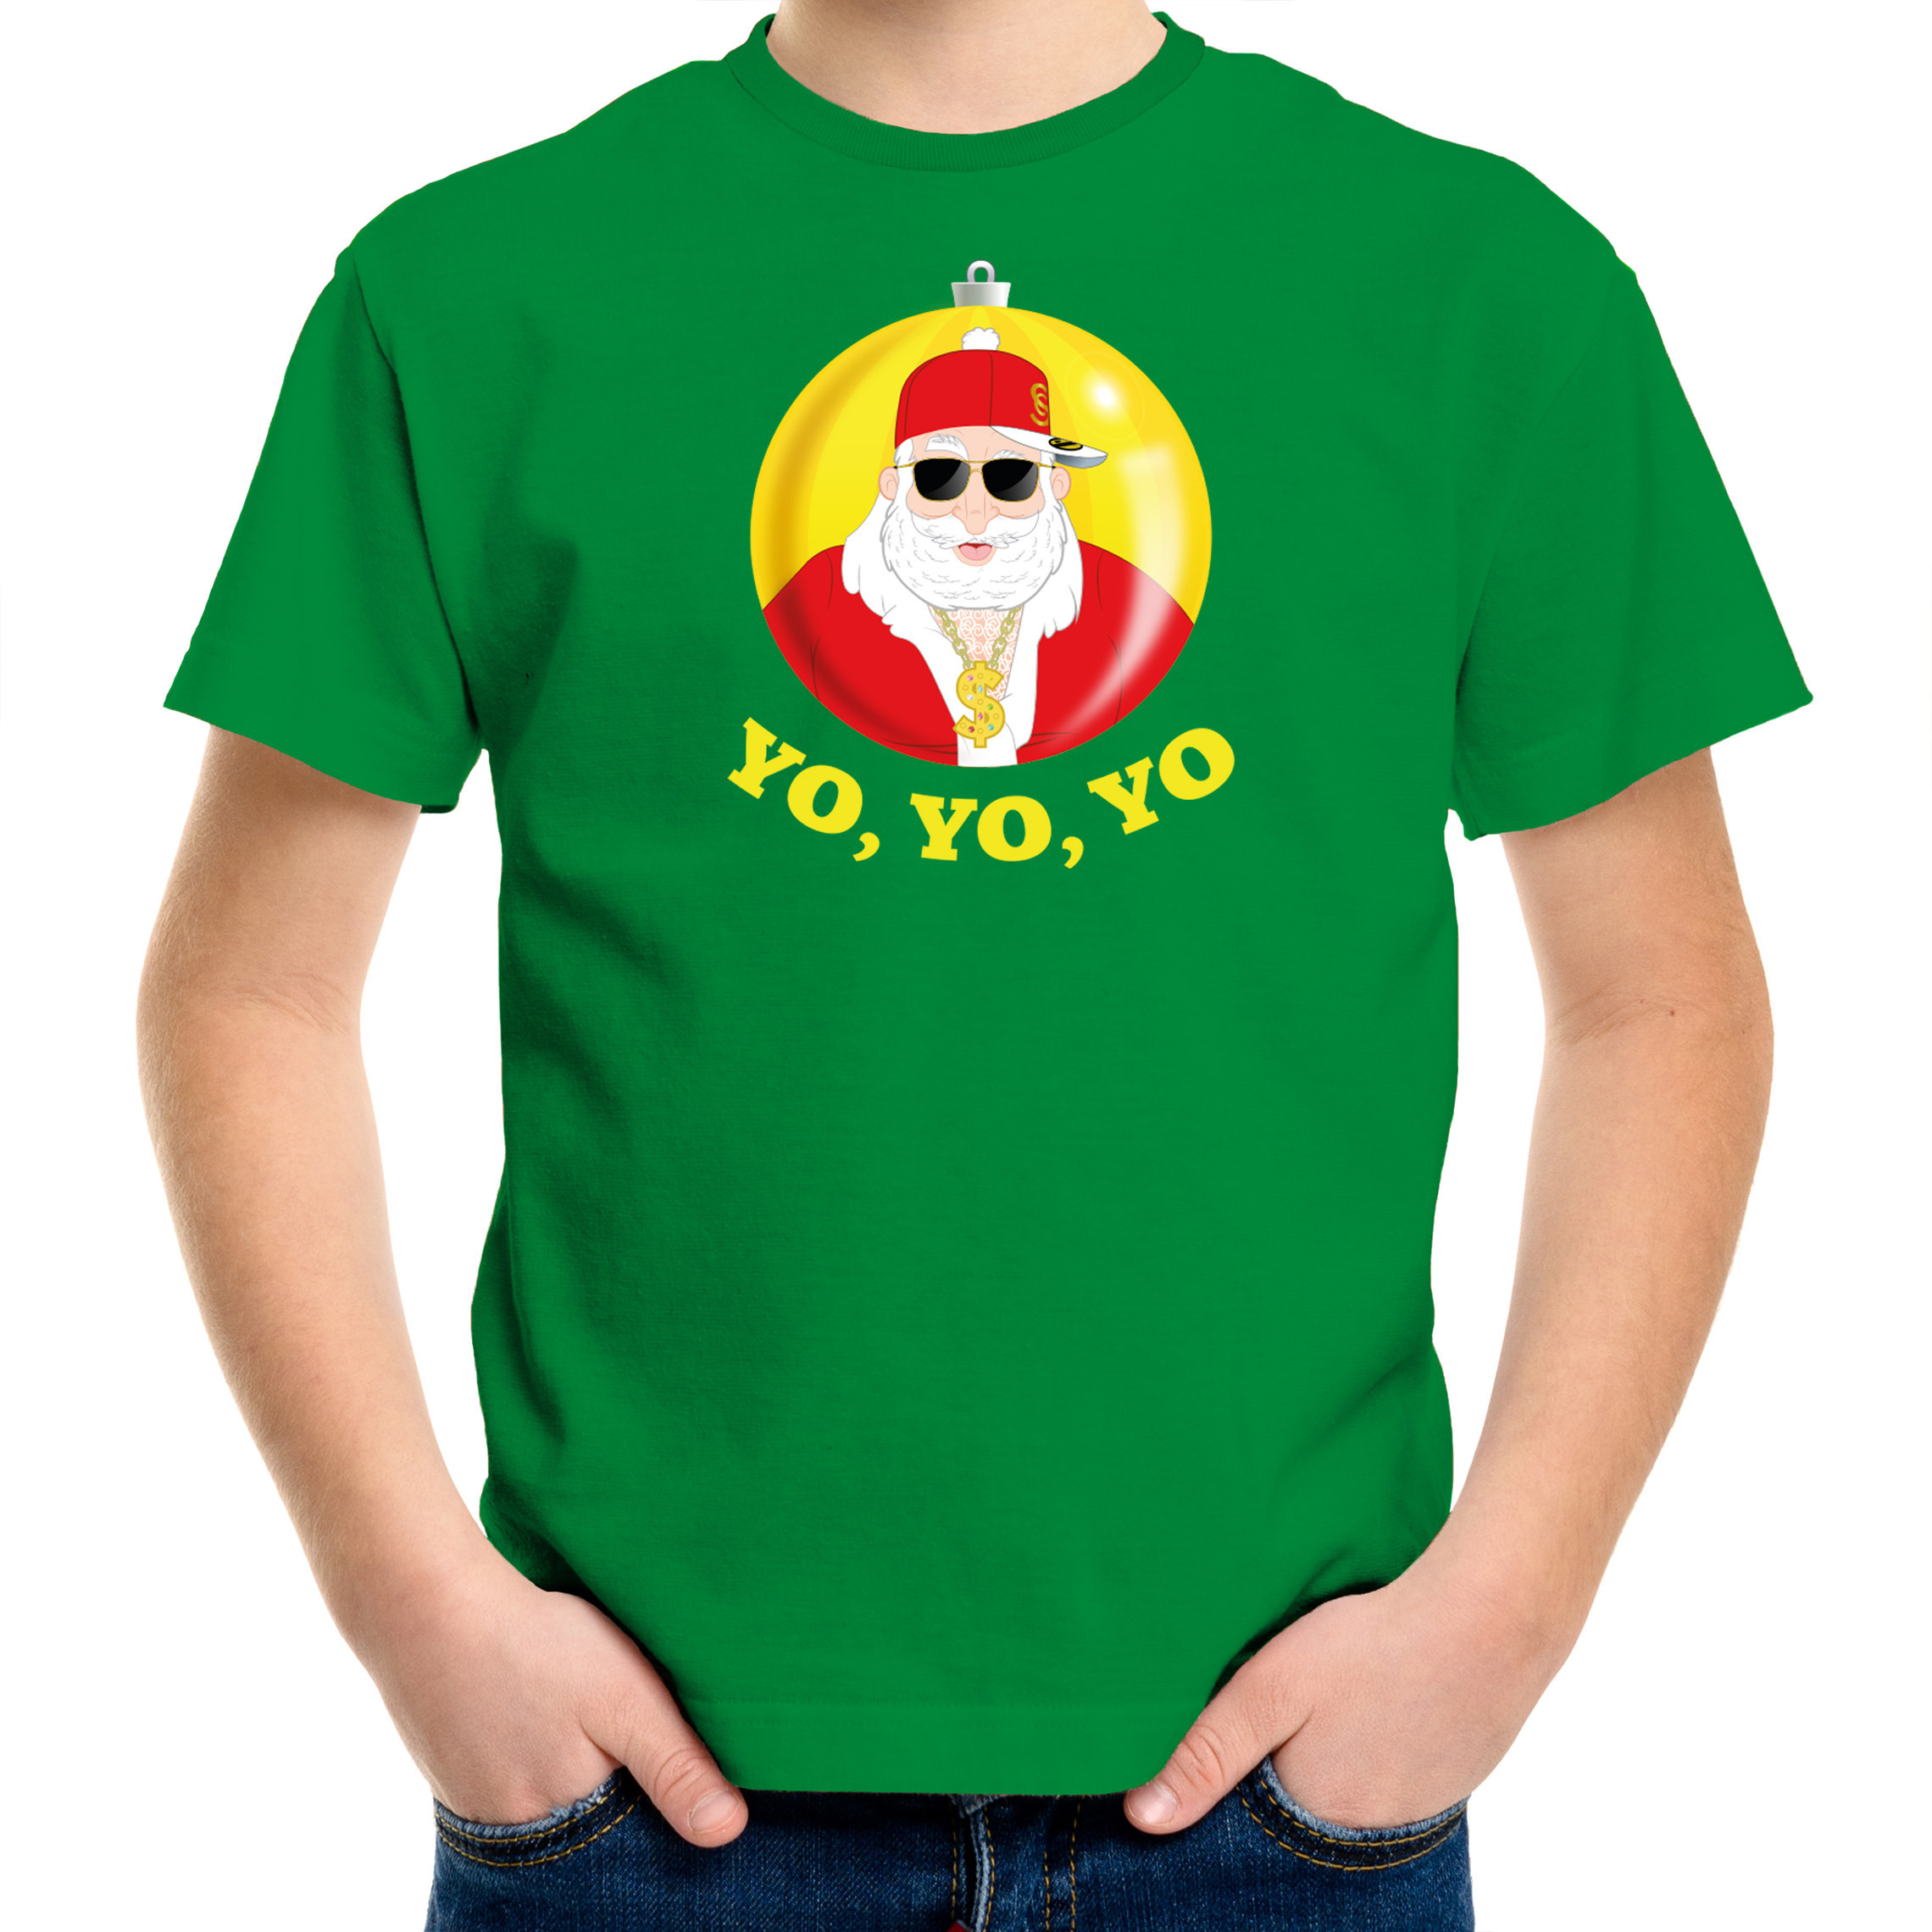 Kerst t-shirt voor kinderen Kerstman groen Yo Yo Yo